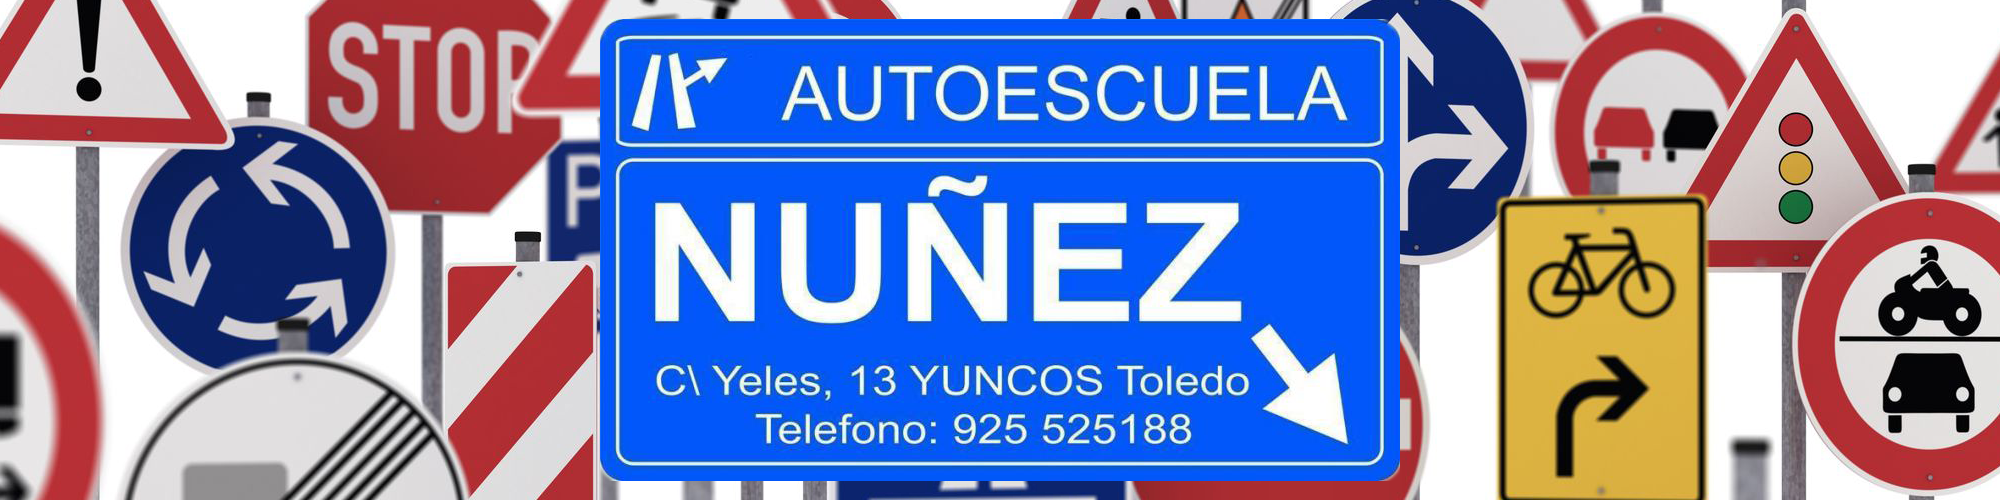 Autoescuelas en Yuncos e Illescas, Toledo – Nuñes – Centro CAP